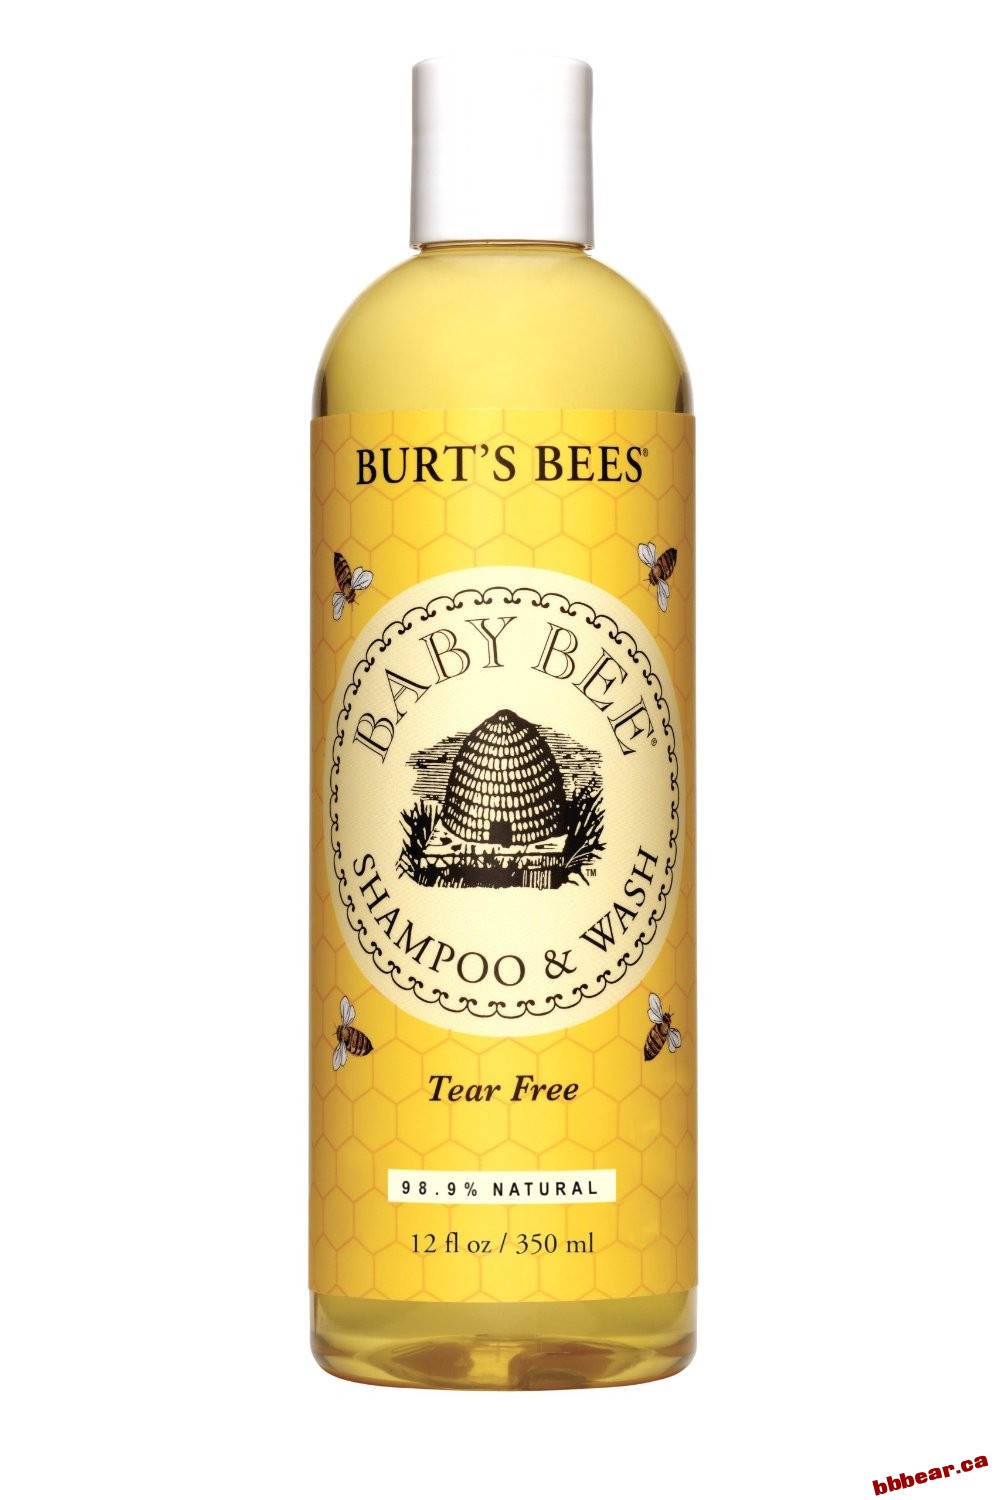 Burt's Bees Baby Bee Shampoo and Wash